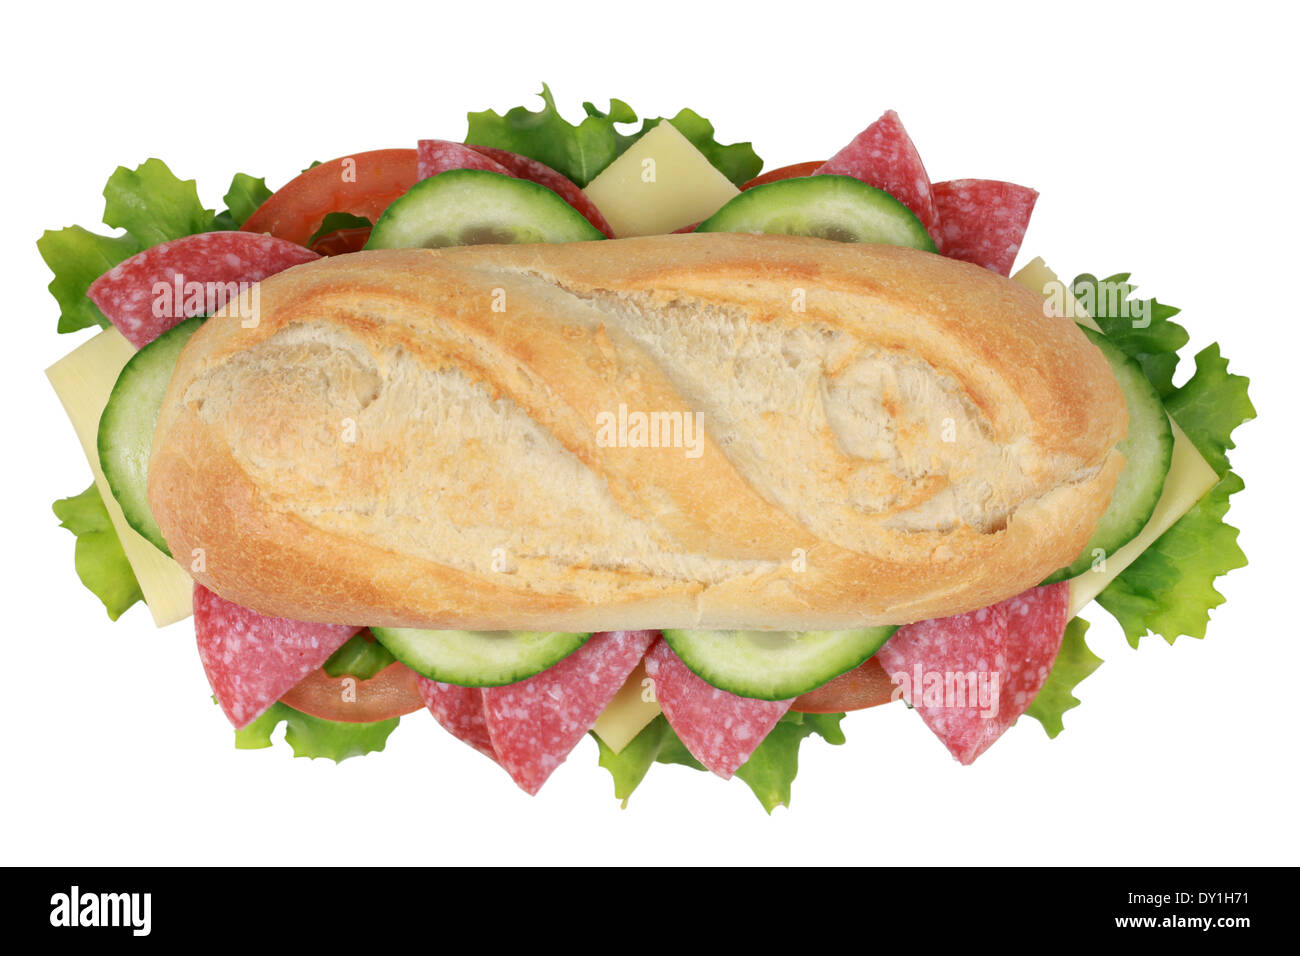 Vista dall'alto di un panino con salsiccia per pizza, formaggio, pomodori, lattuga e cetriolo Foto Stock